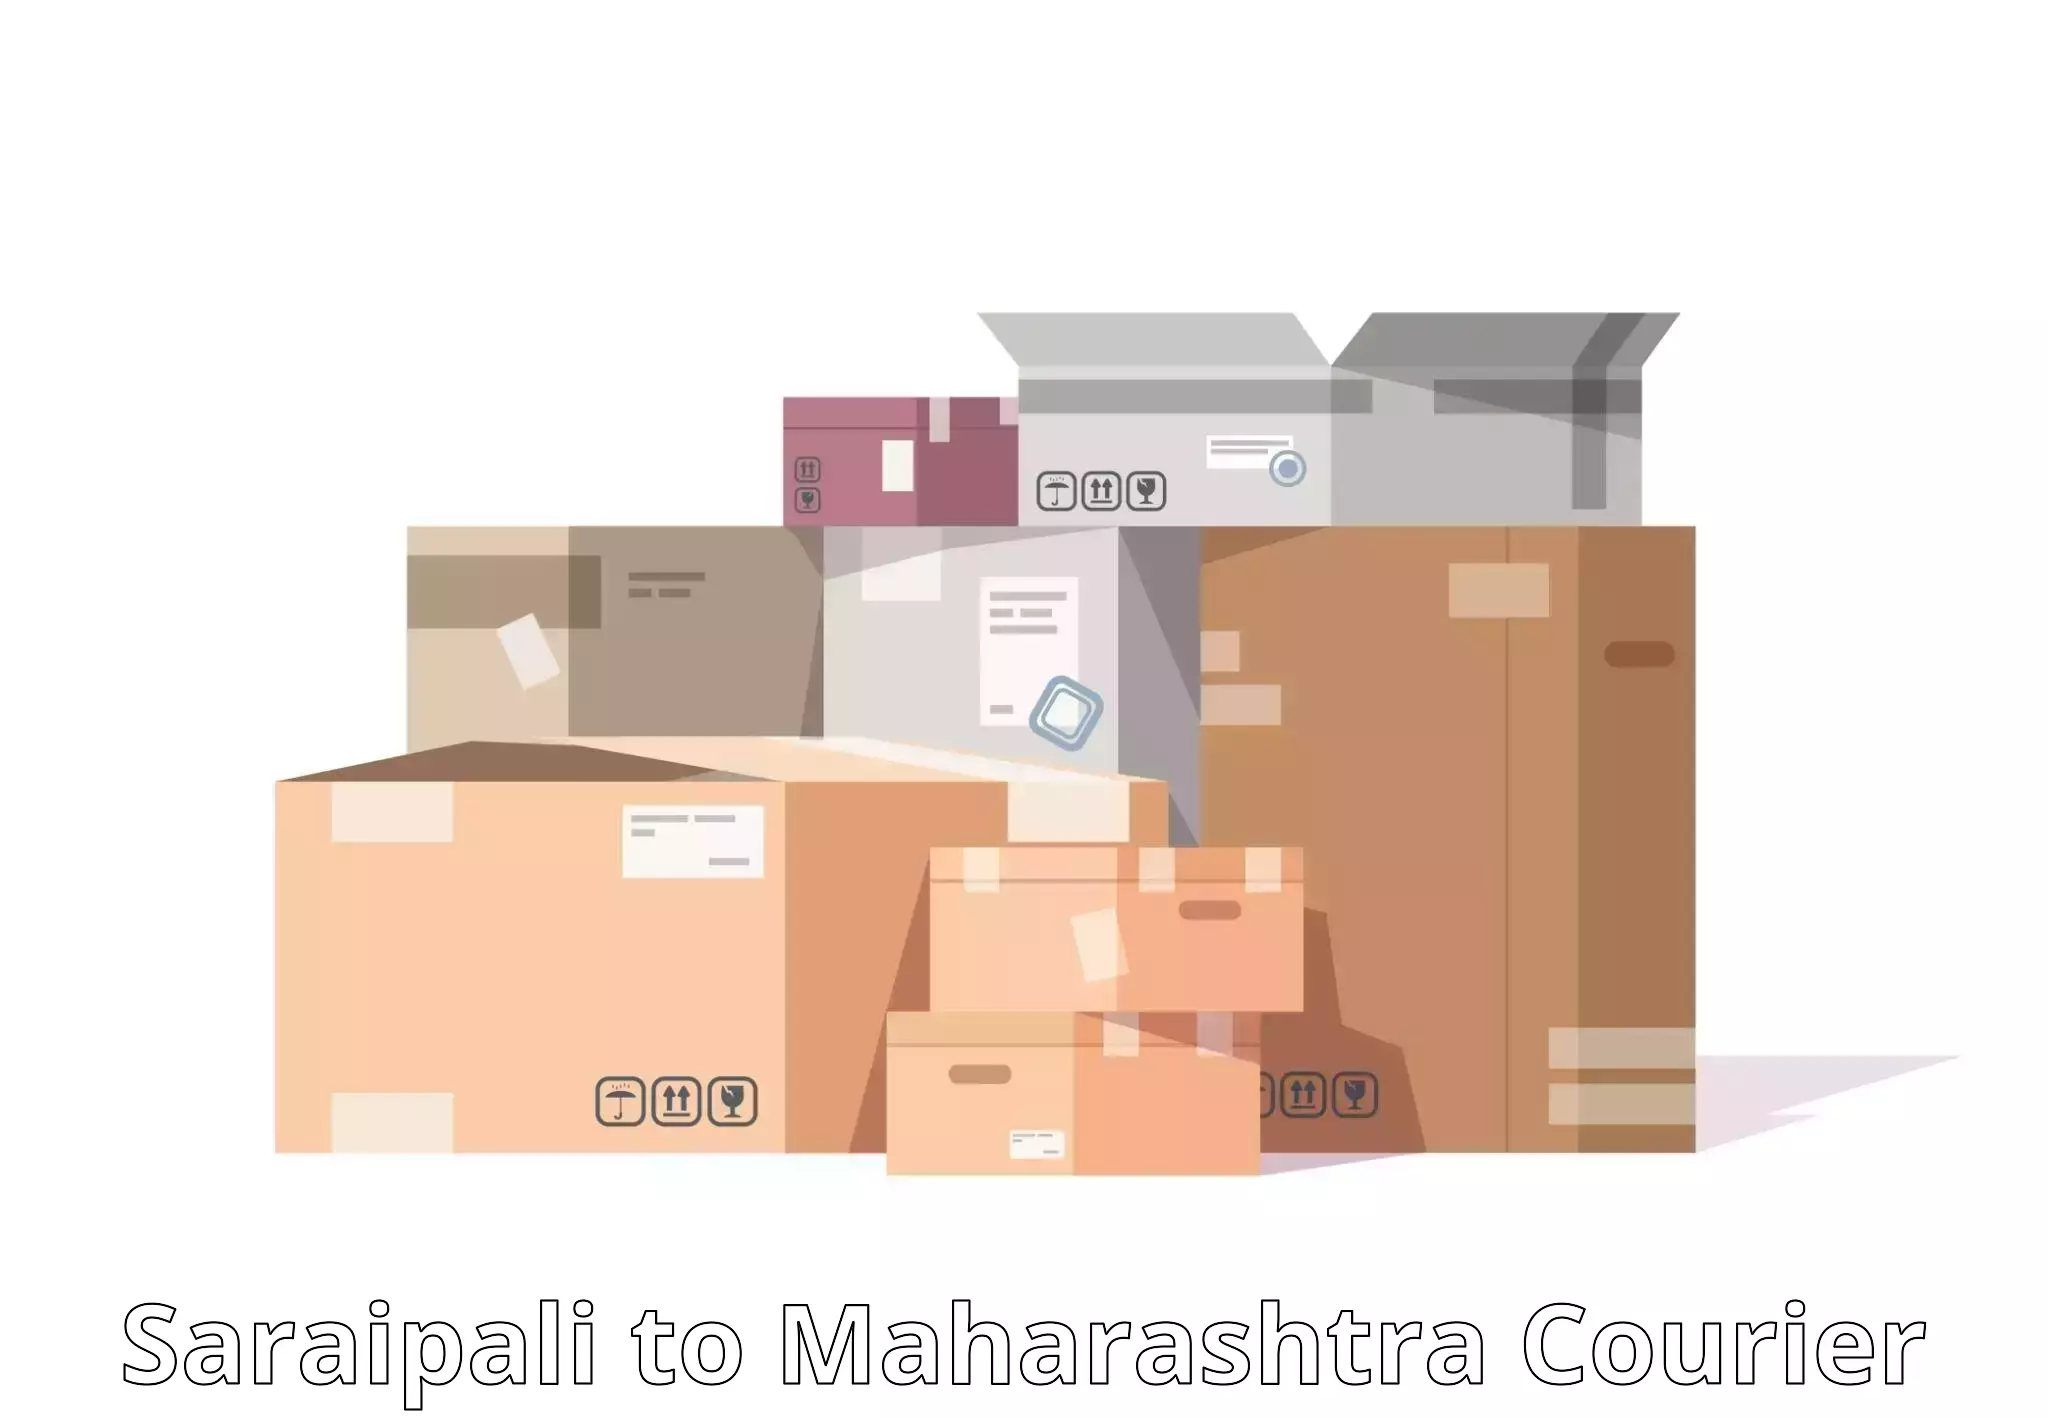 Local delivery service Saraipali to Maharashtra